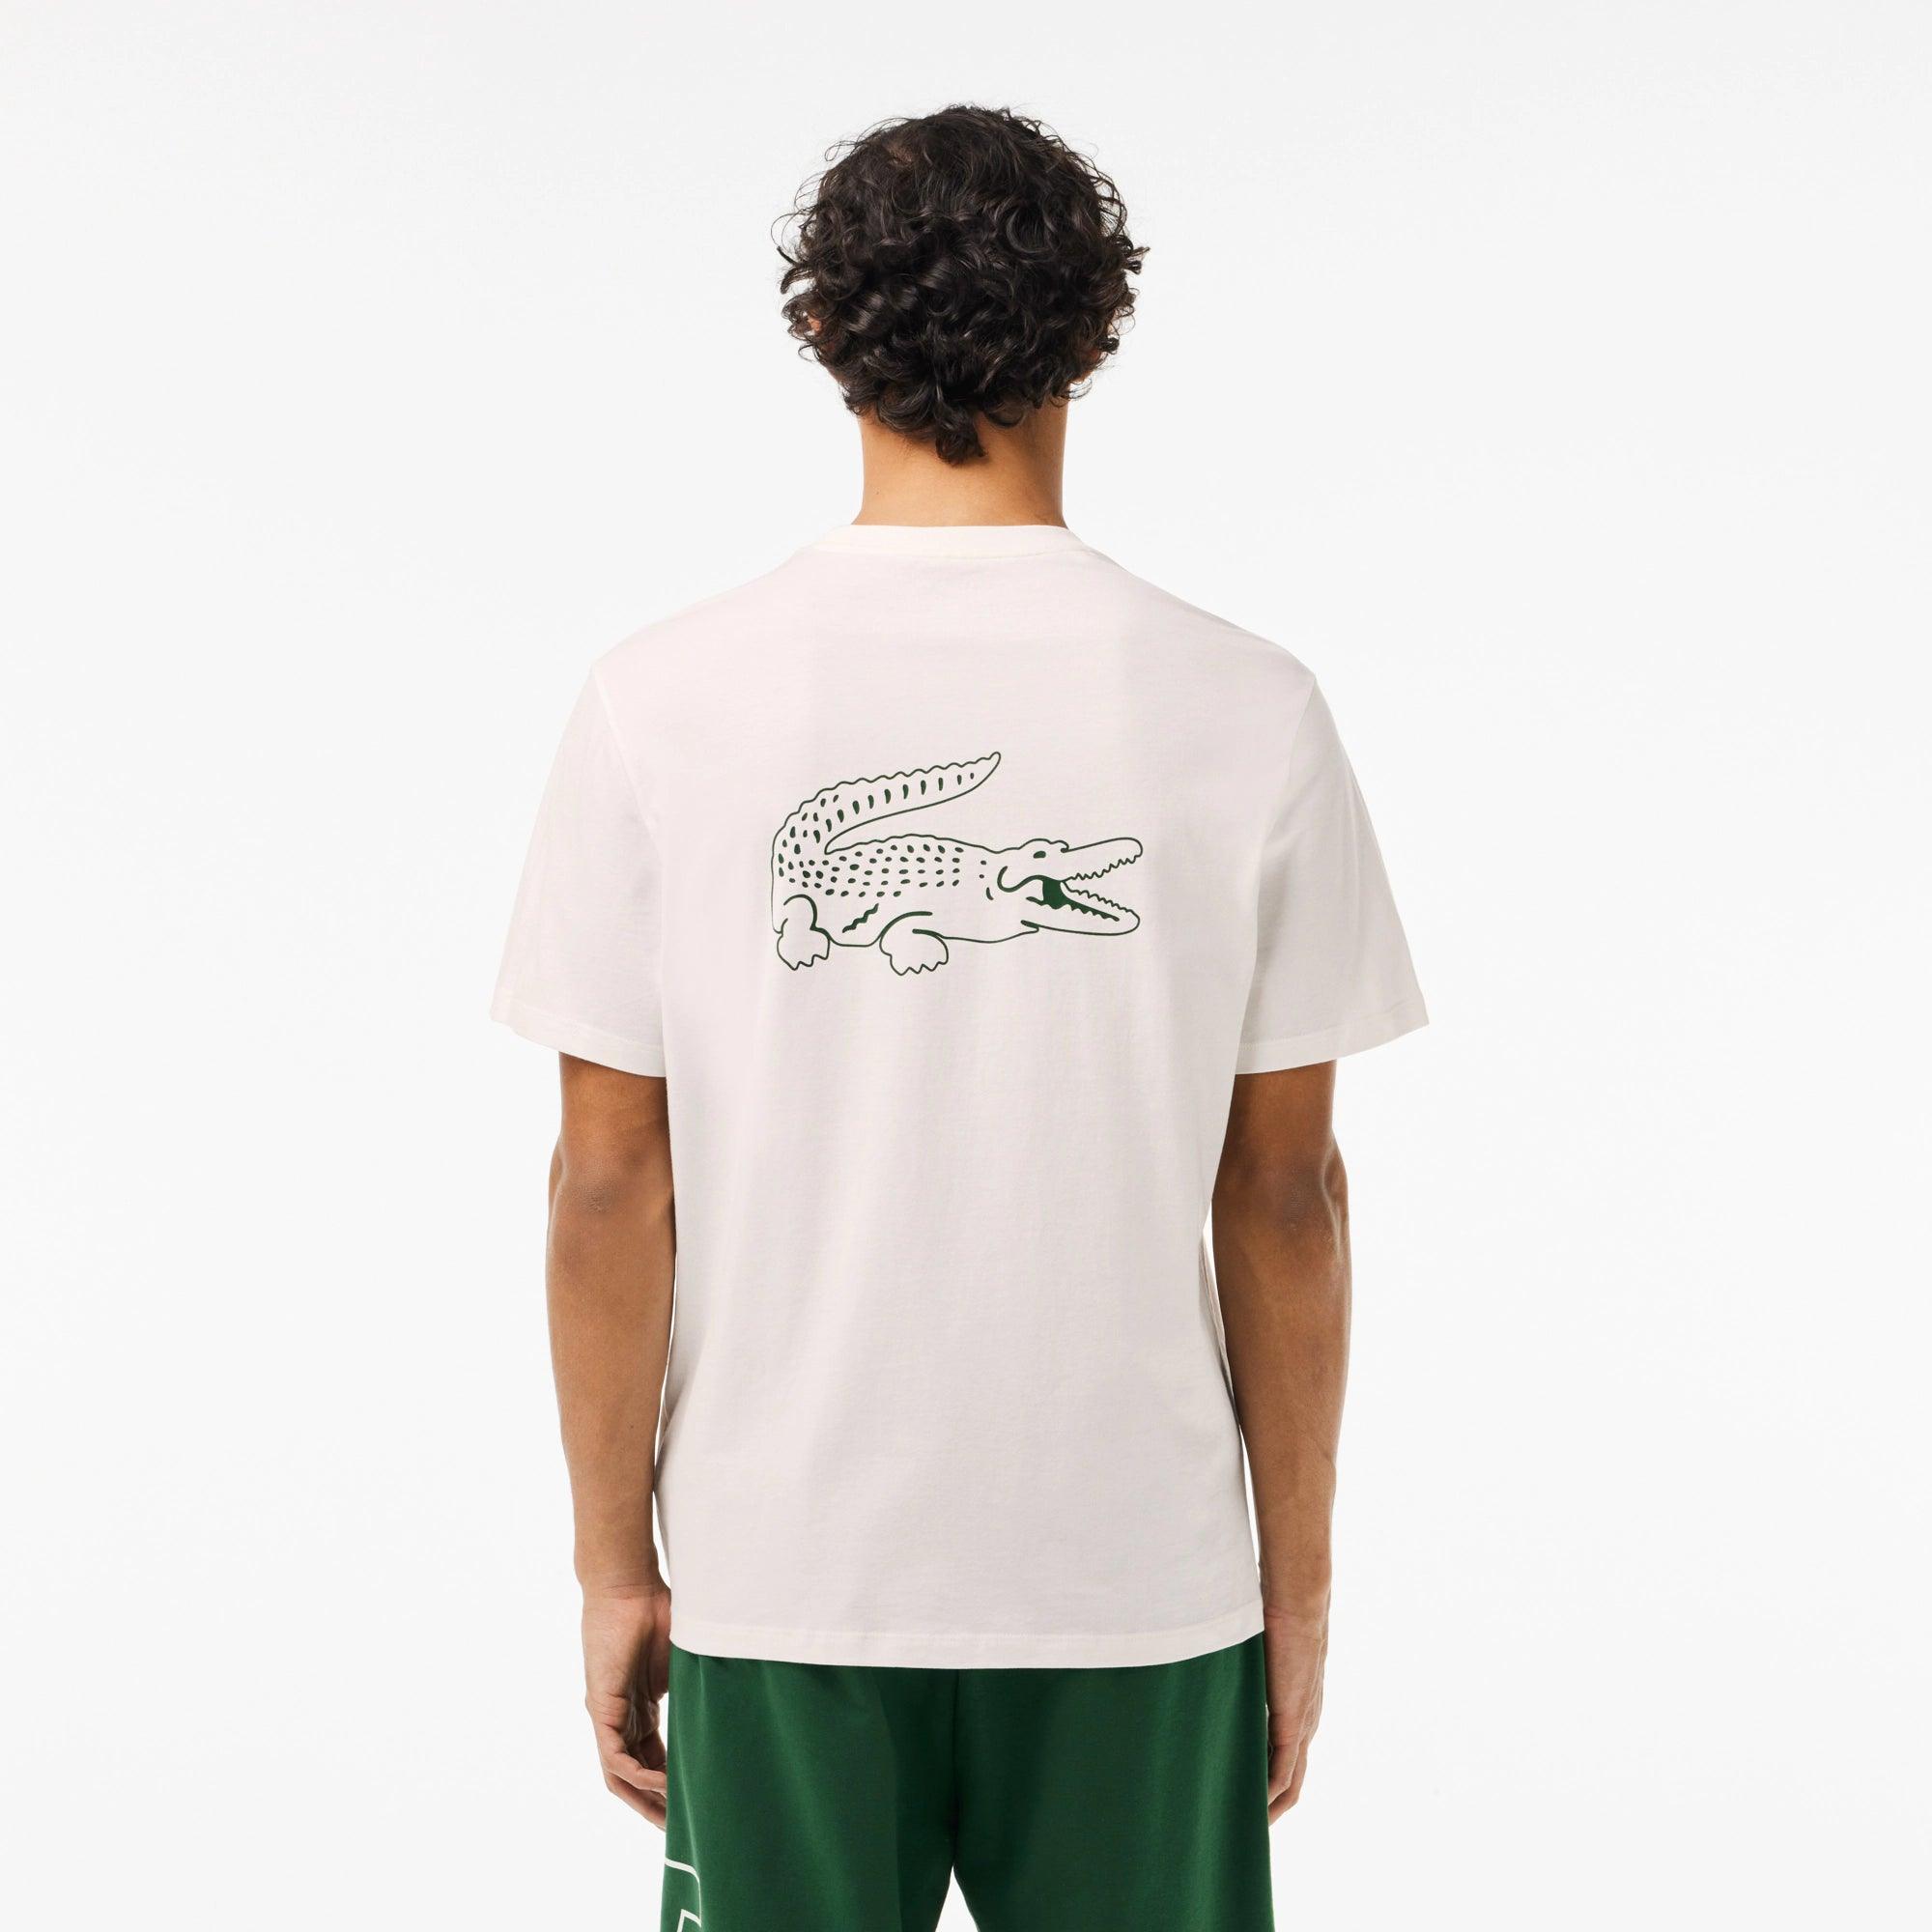 Camiseta Lacoste con Detalle de la Marca a Contraste - ECRU